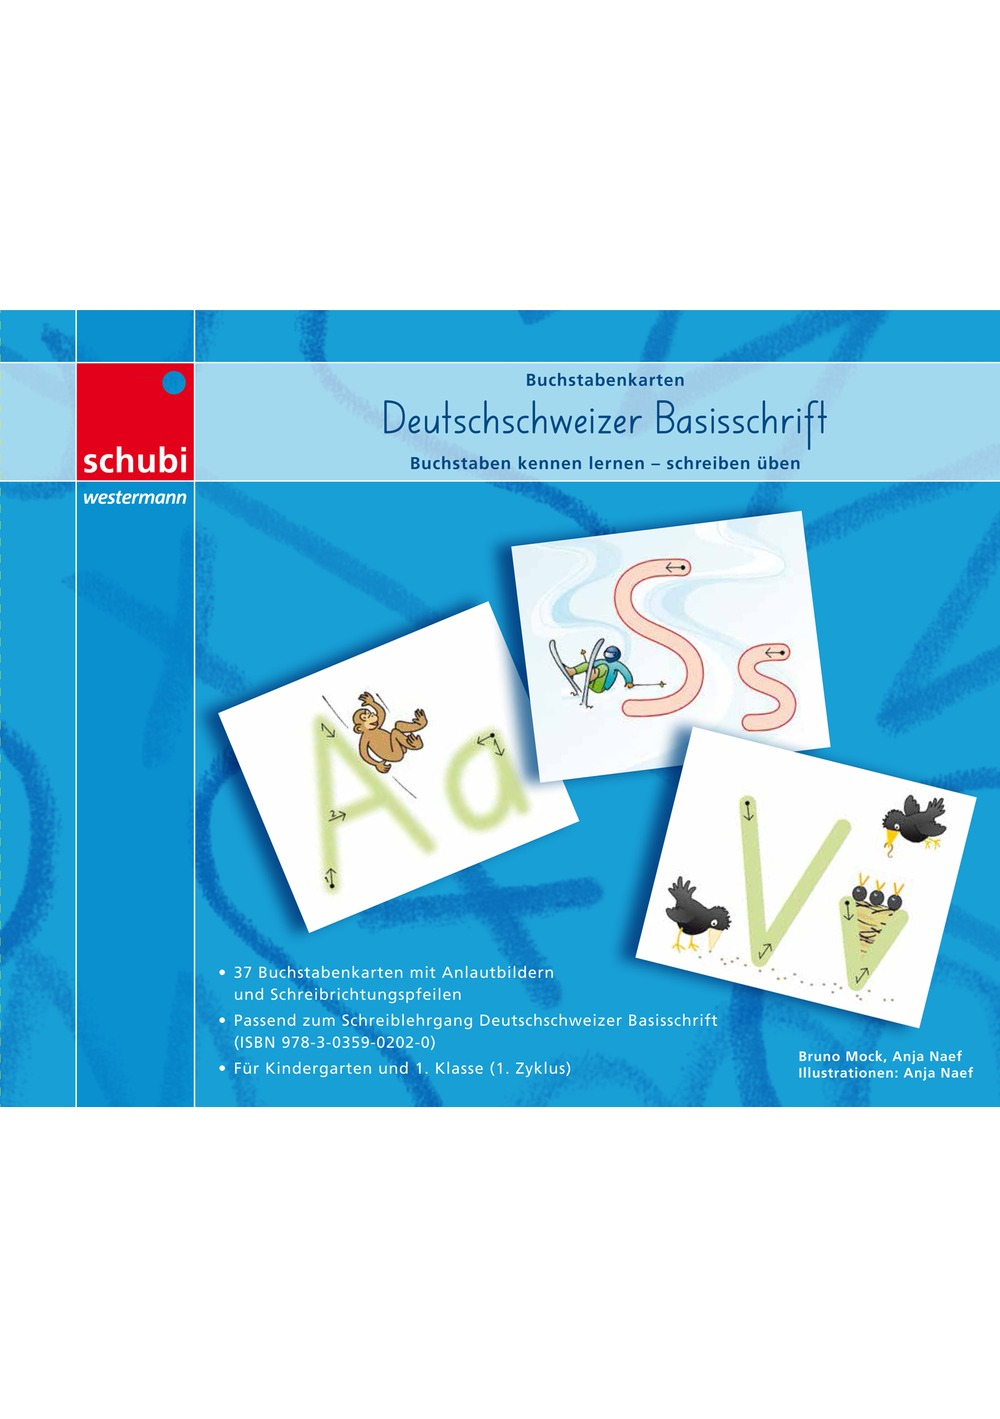 Buchstabenkarten: Deutschschweizer Basisschrift - Schubi über Buchstabenkarten